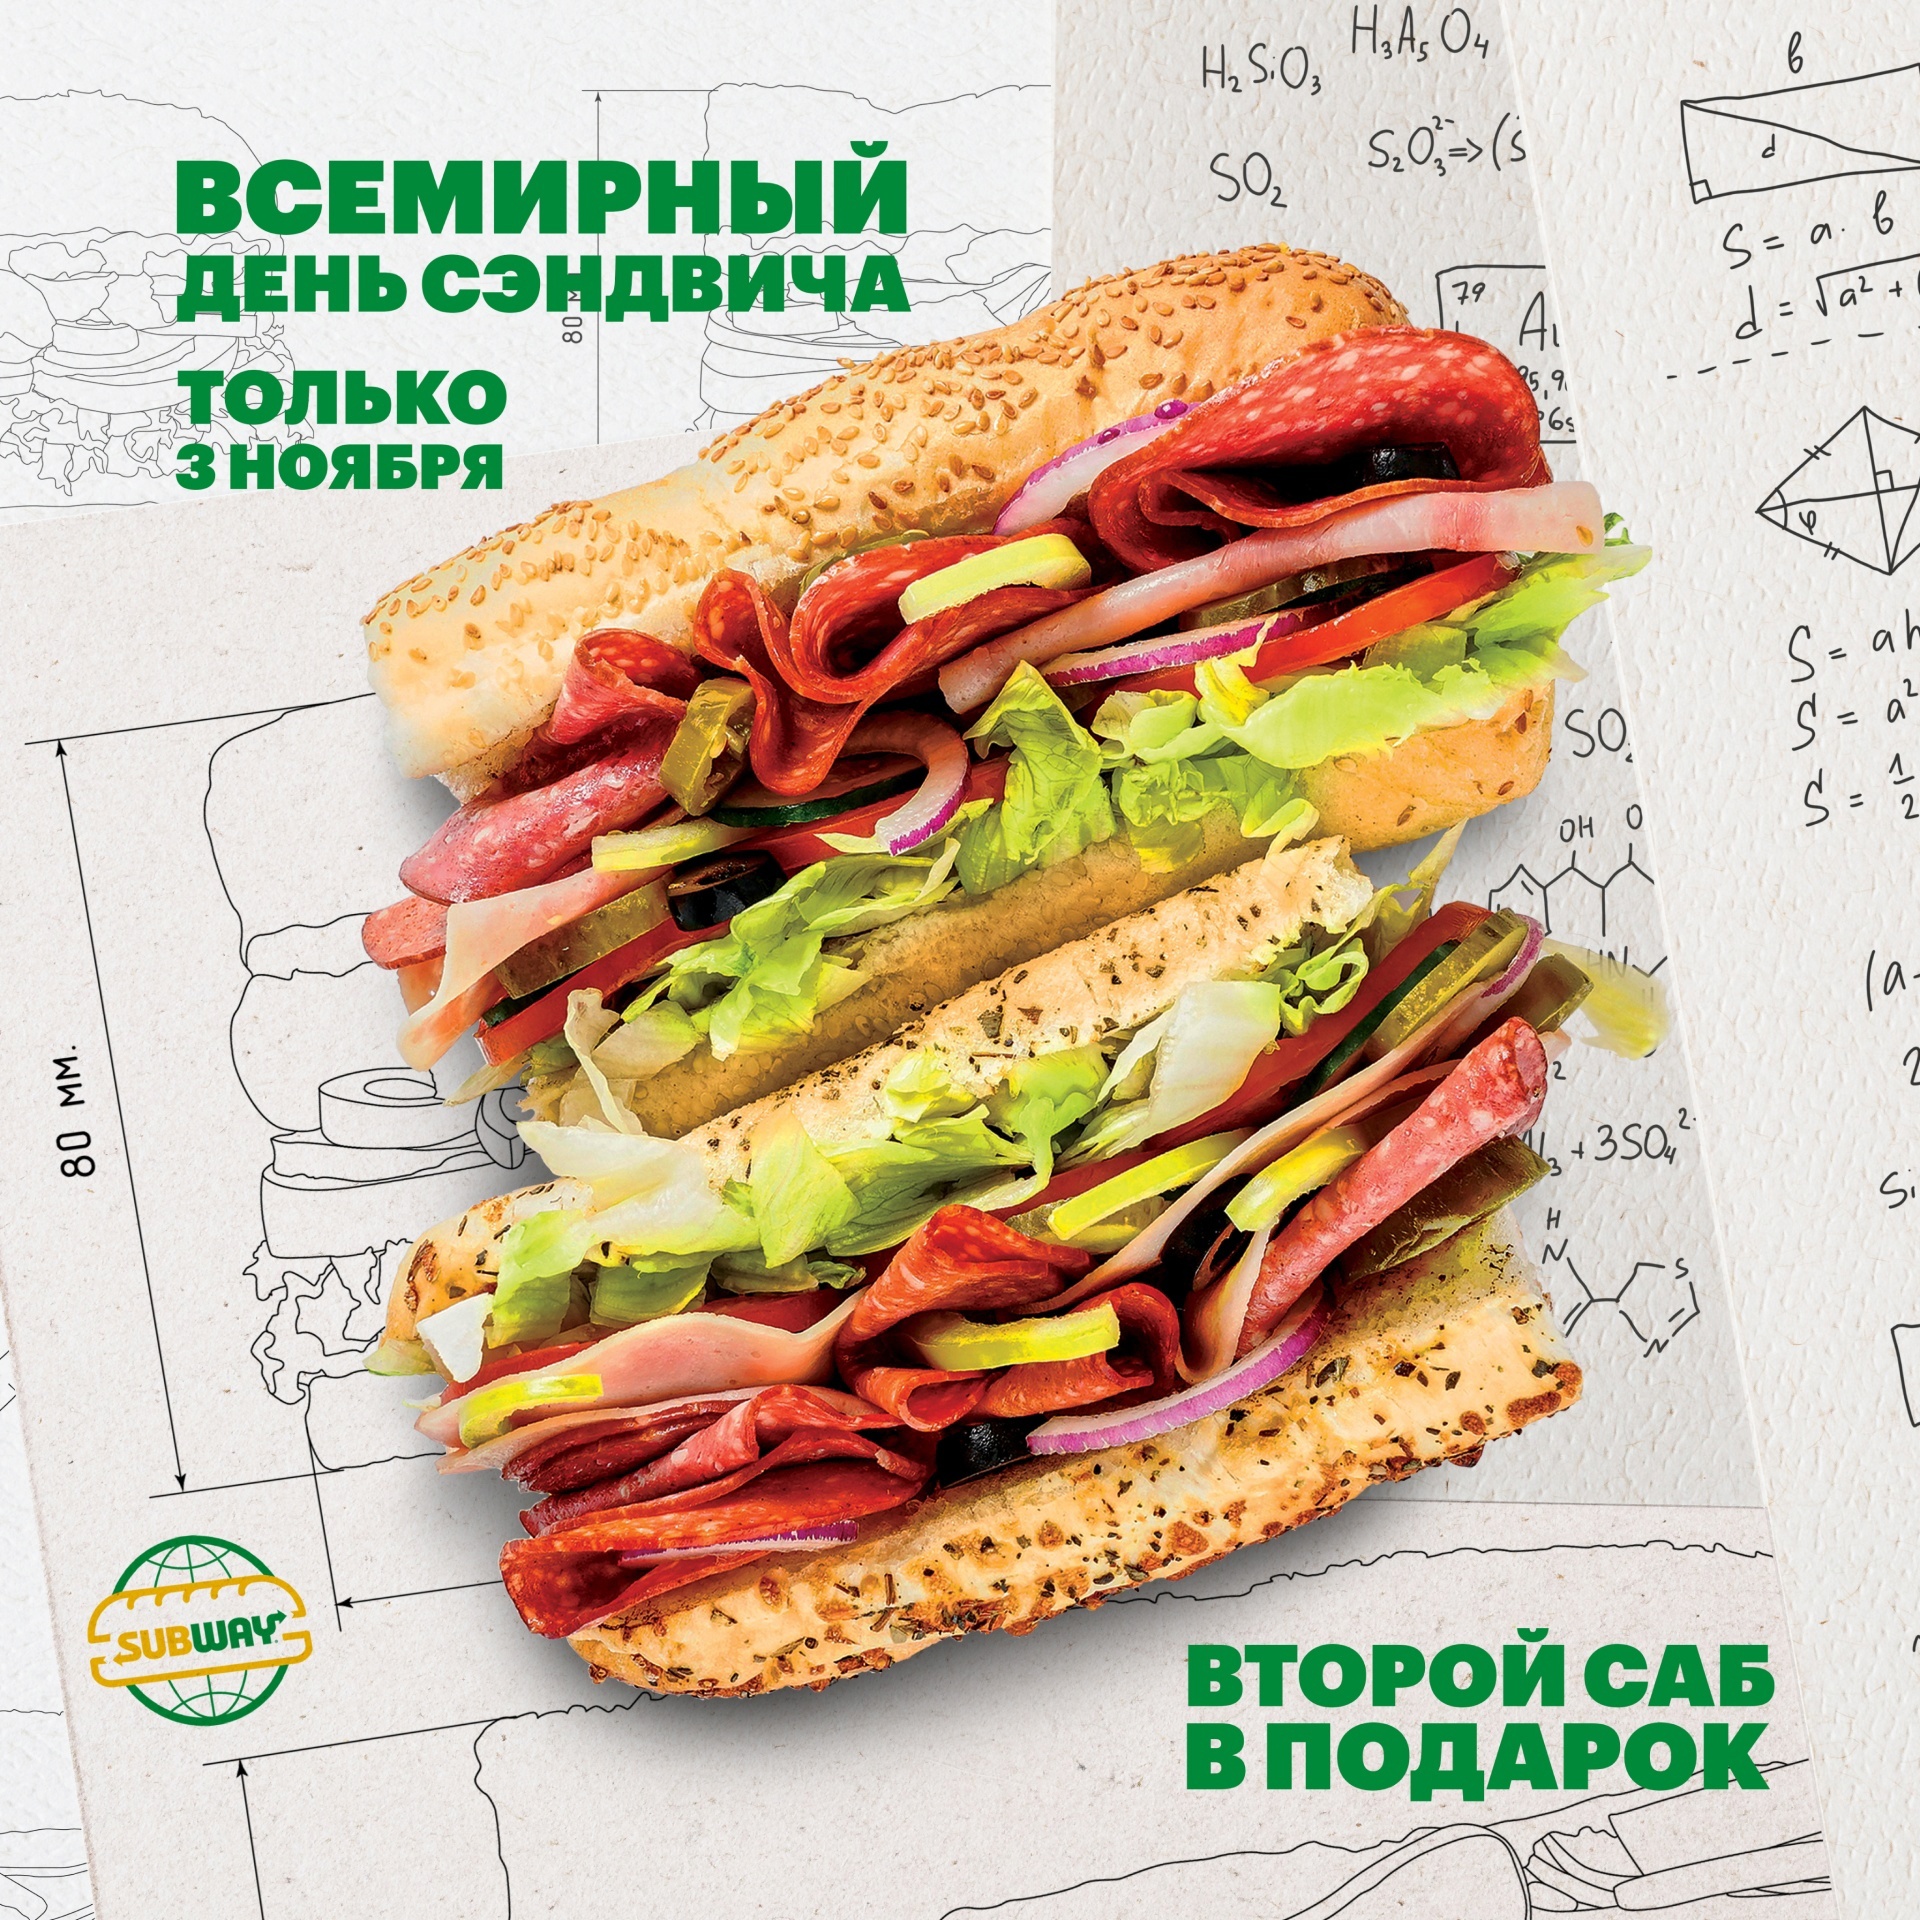 Осталось 2 дня до Всемирного Дня сэндвича!